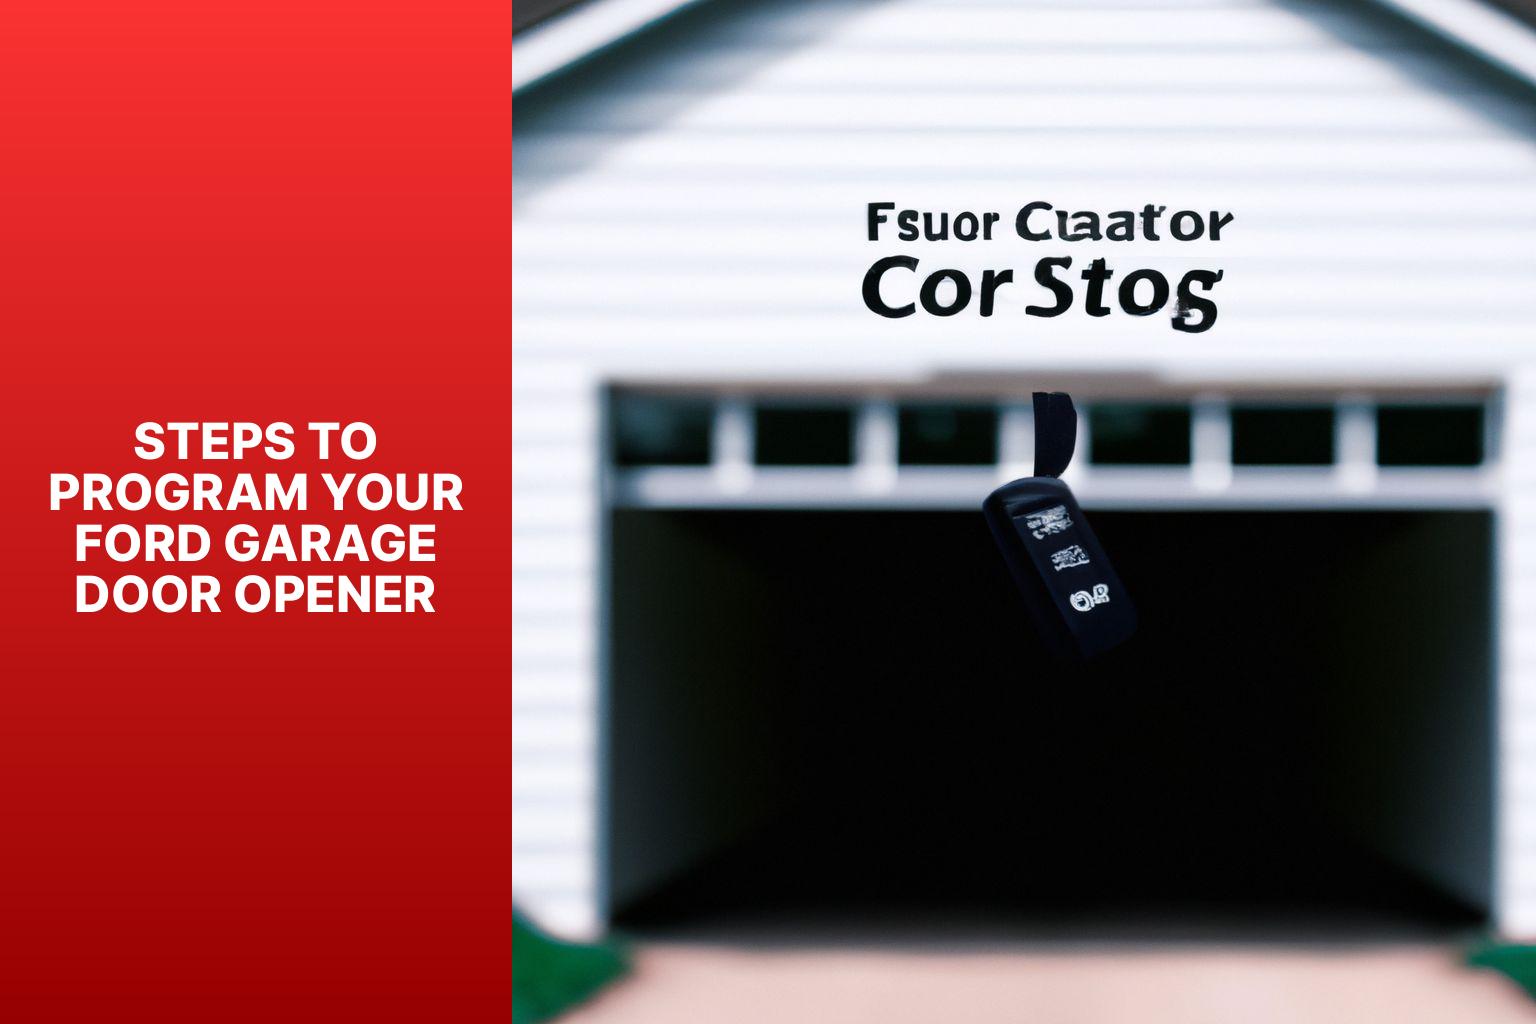 Steps to Program Your Ford Garage Door Opener - How to Program Ford Garage Door Opener 